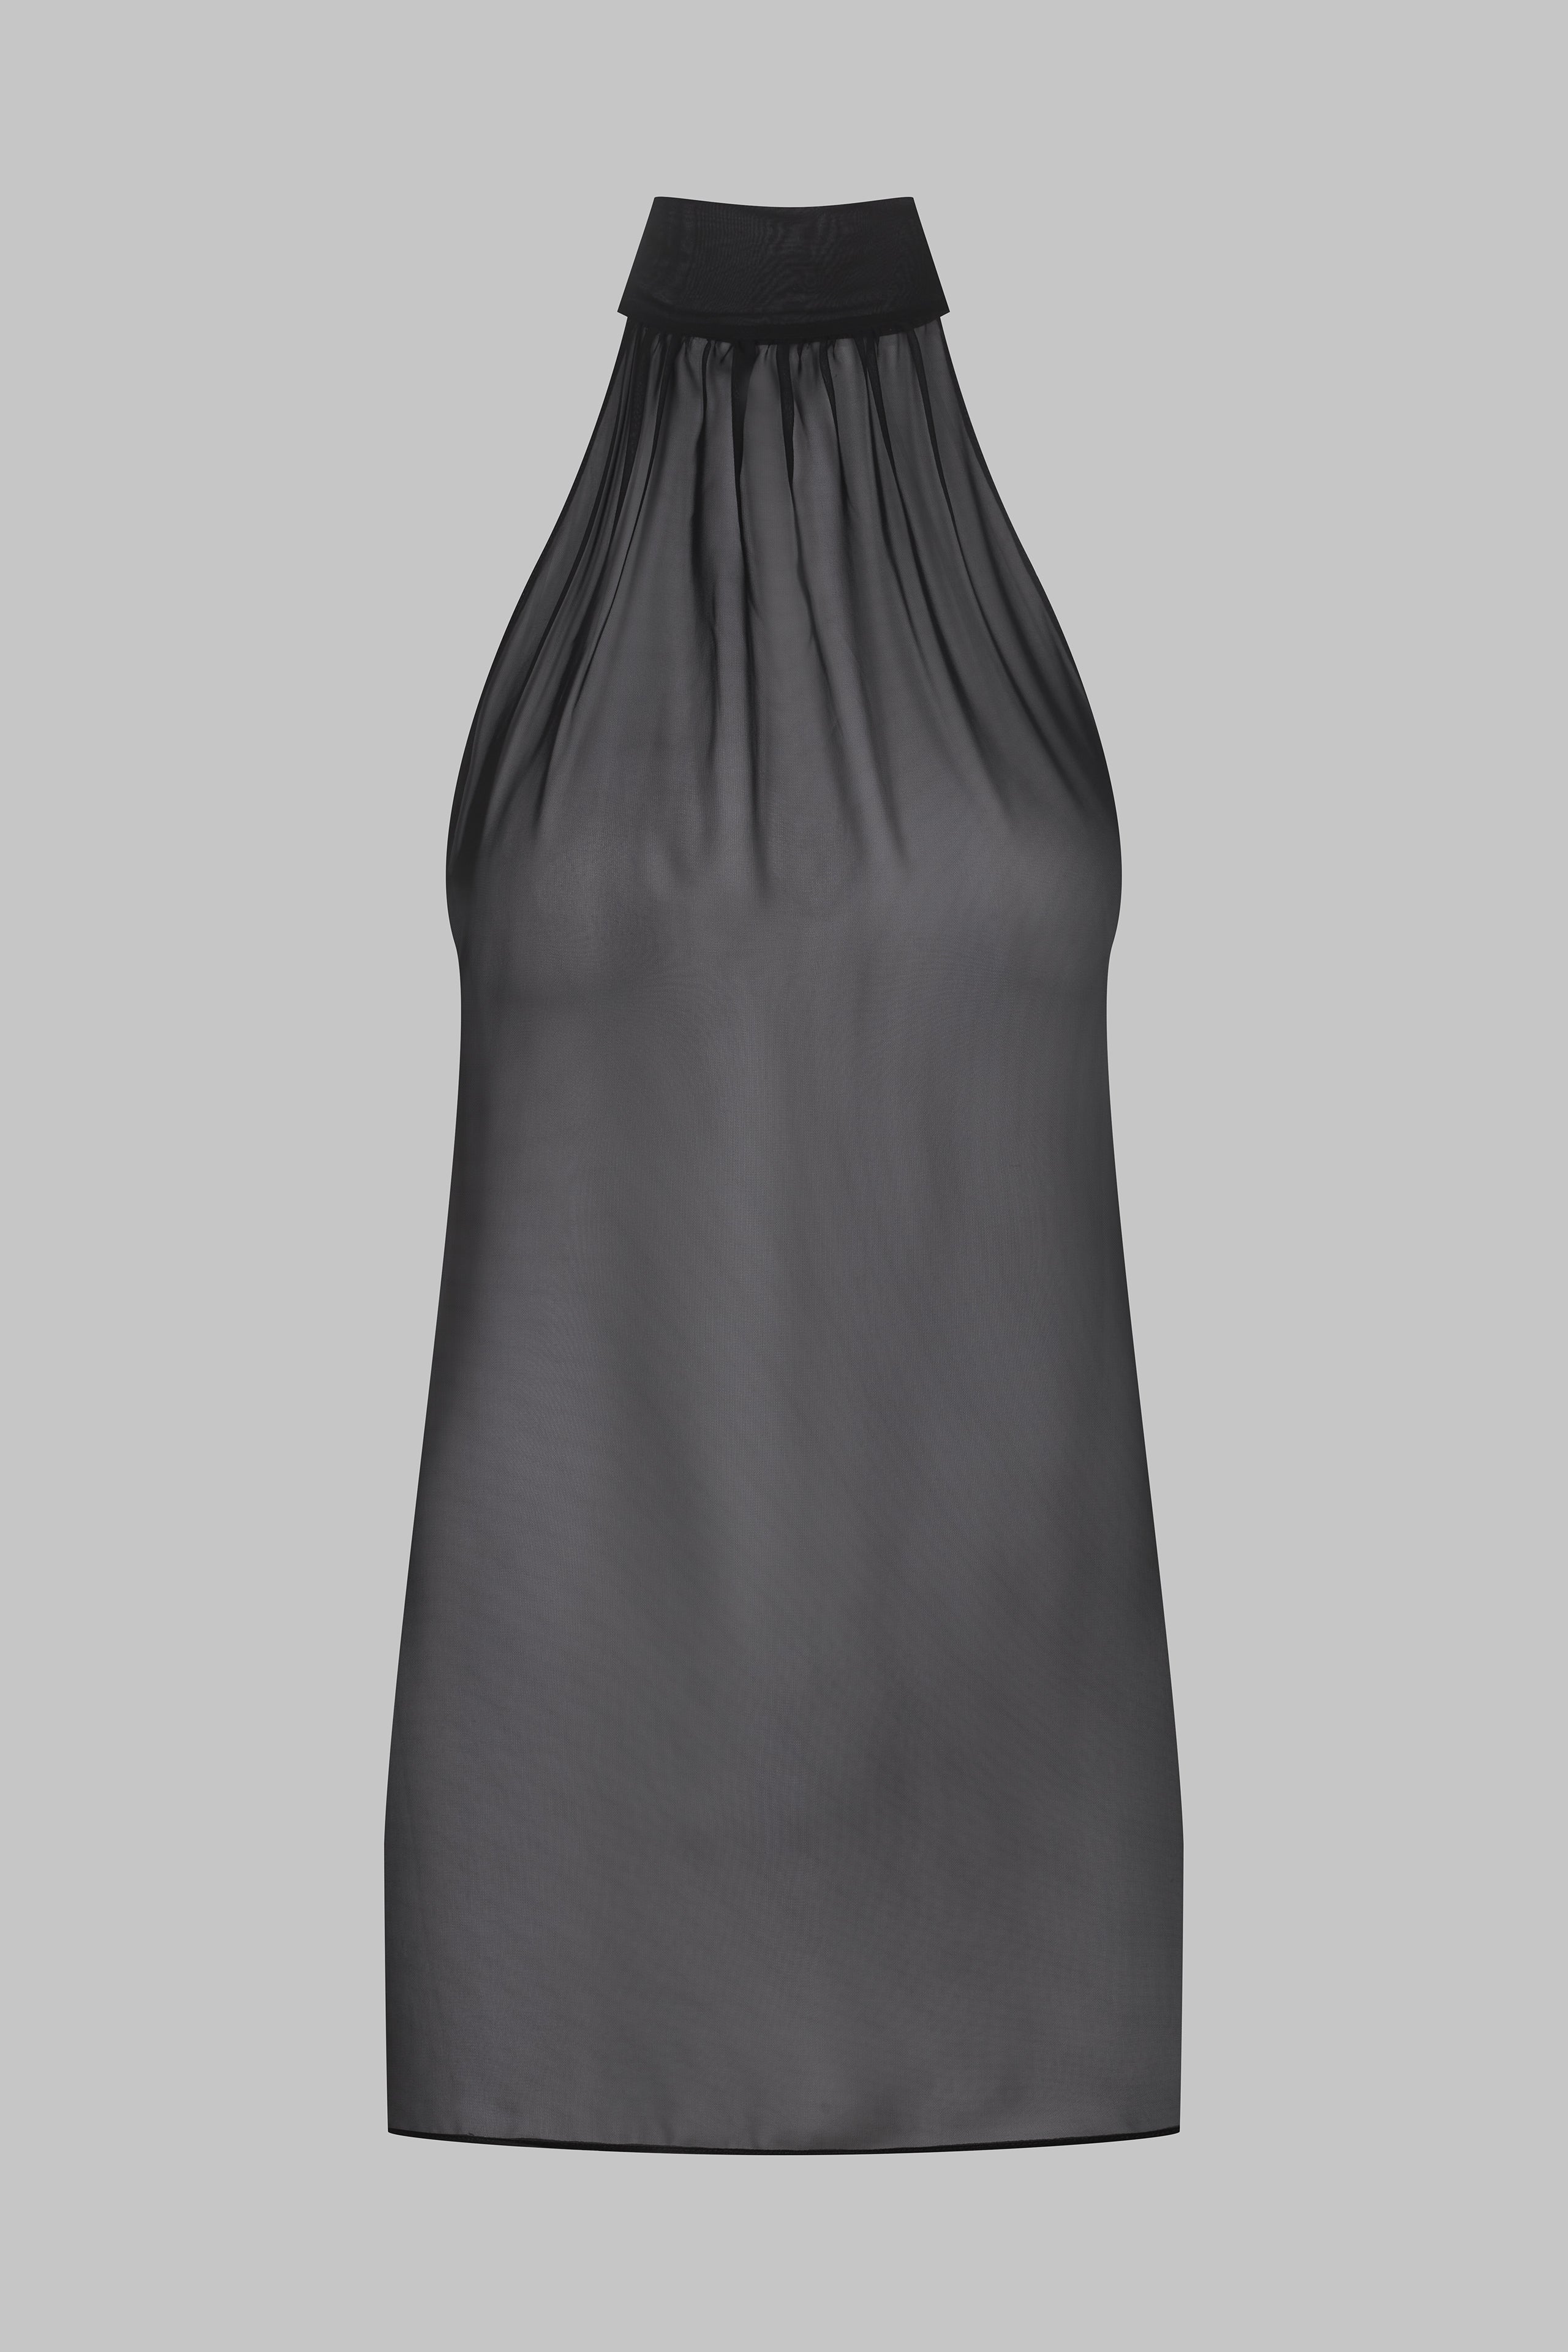 013 - Transparente Bluse aus Musselin